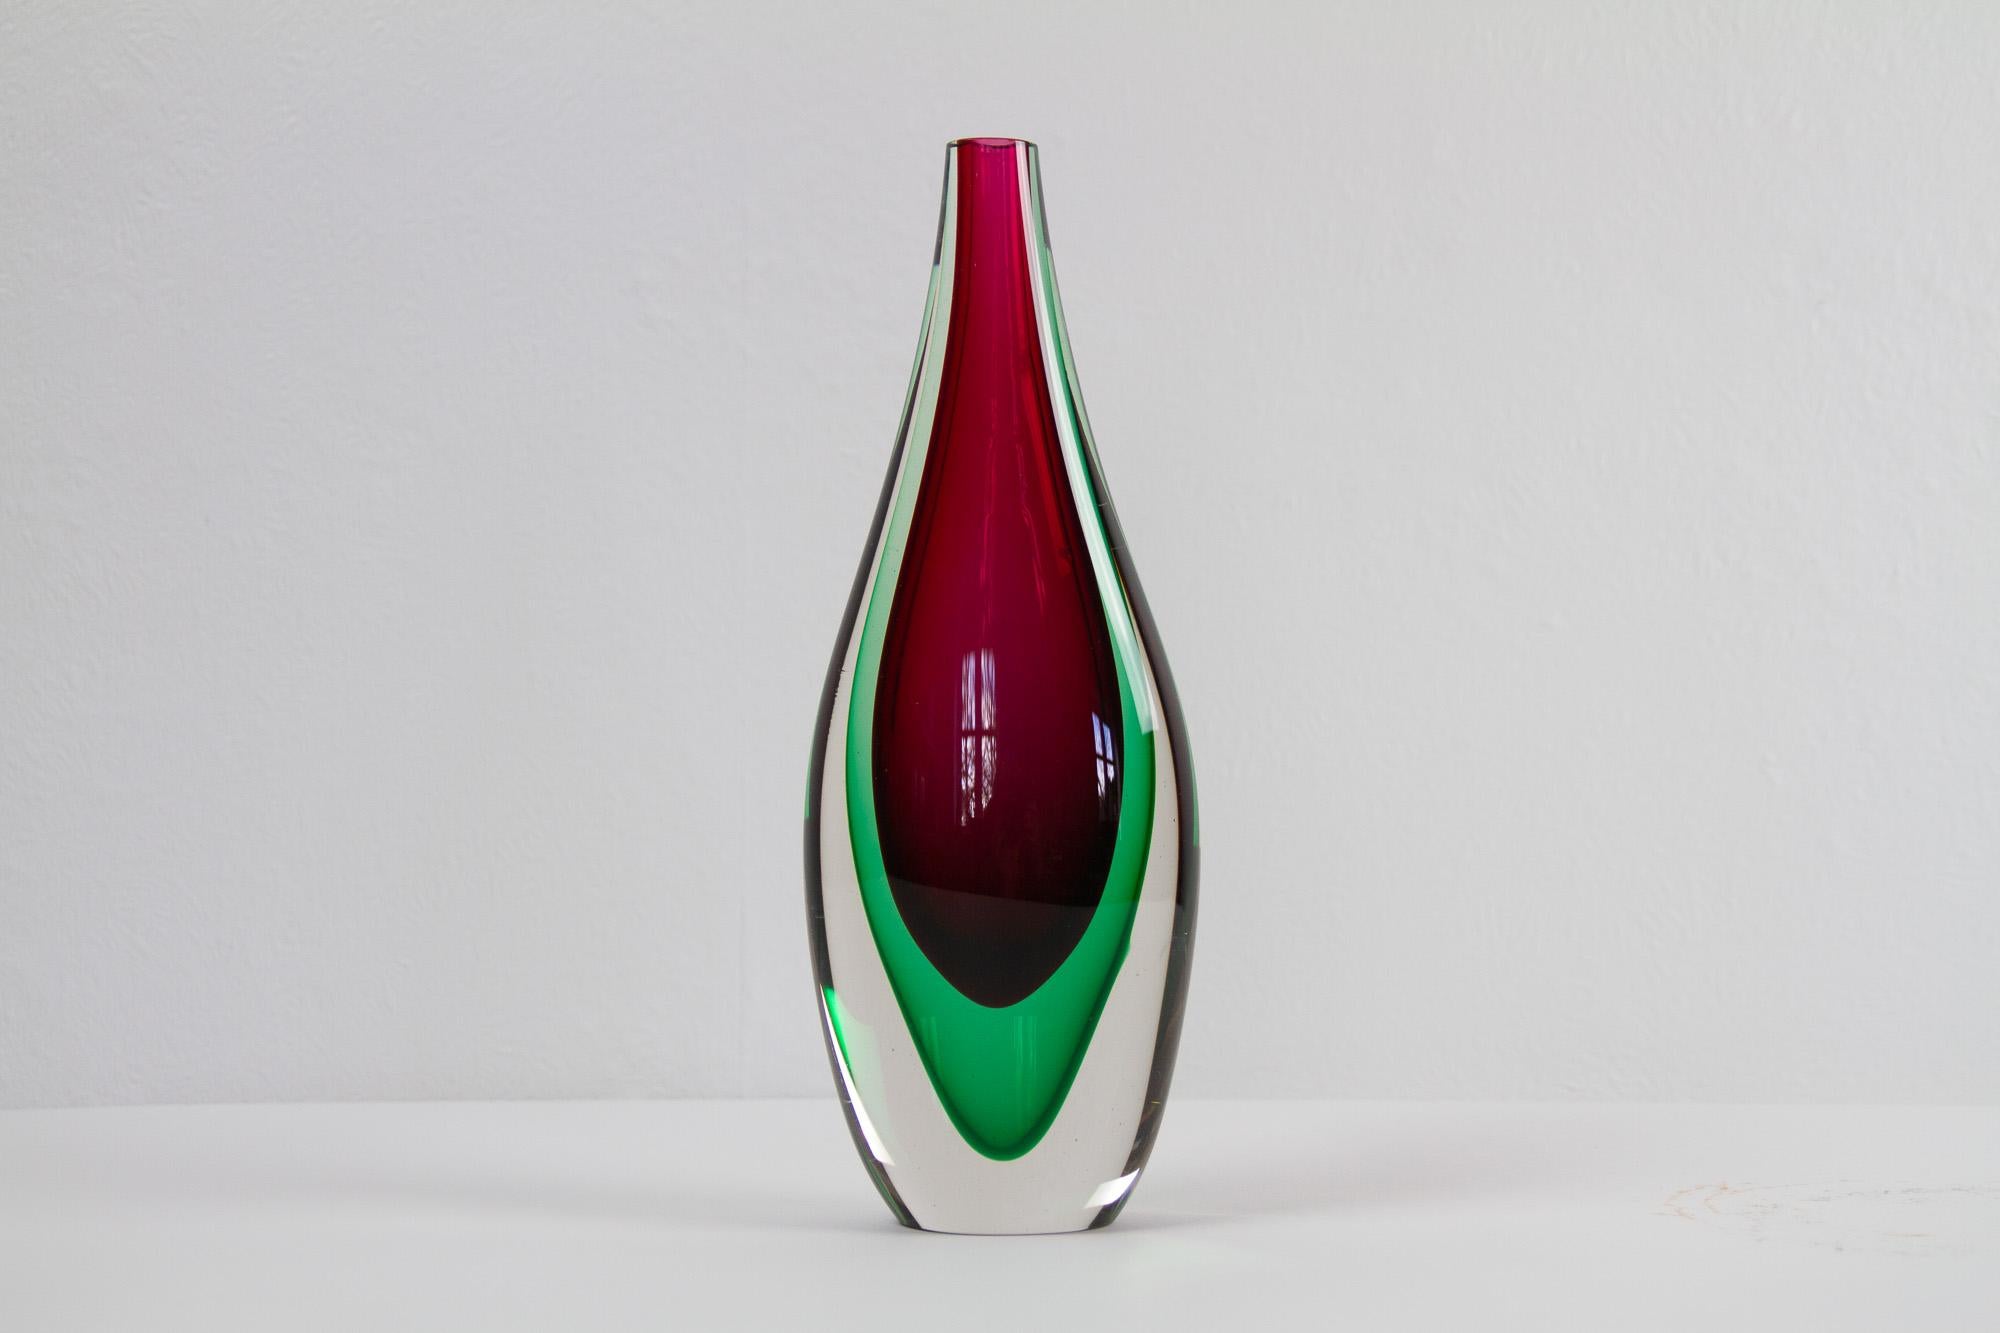 Vintage Murano Teardrop Sommerso vase 1960s
Magnifique vase de Murano en verre transparent, vert et magenta, soufflé à la main sur l'île de Murano en utilisant la technique Sommerso de superposition de différentes couleurs de verre.
Hauteur 28